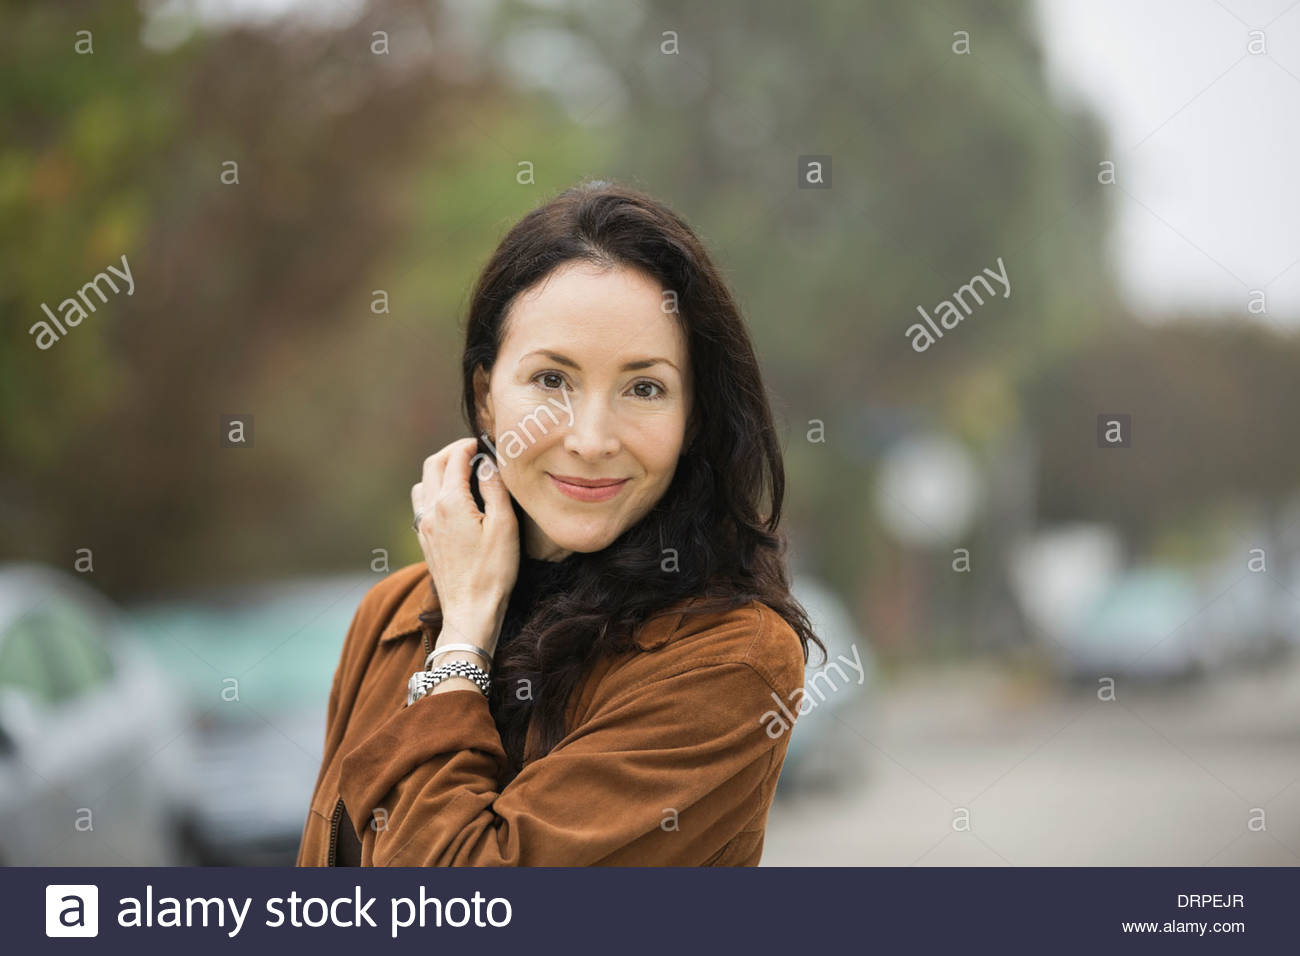 Mujer sonriente mirando a la cámara Foto de stock